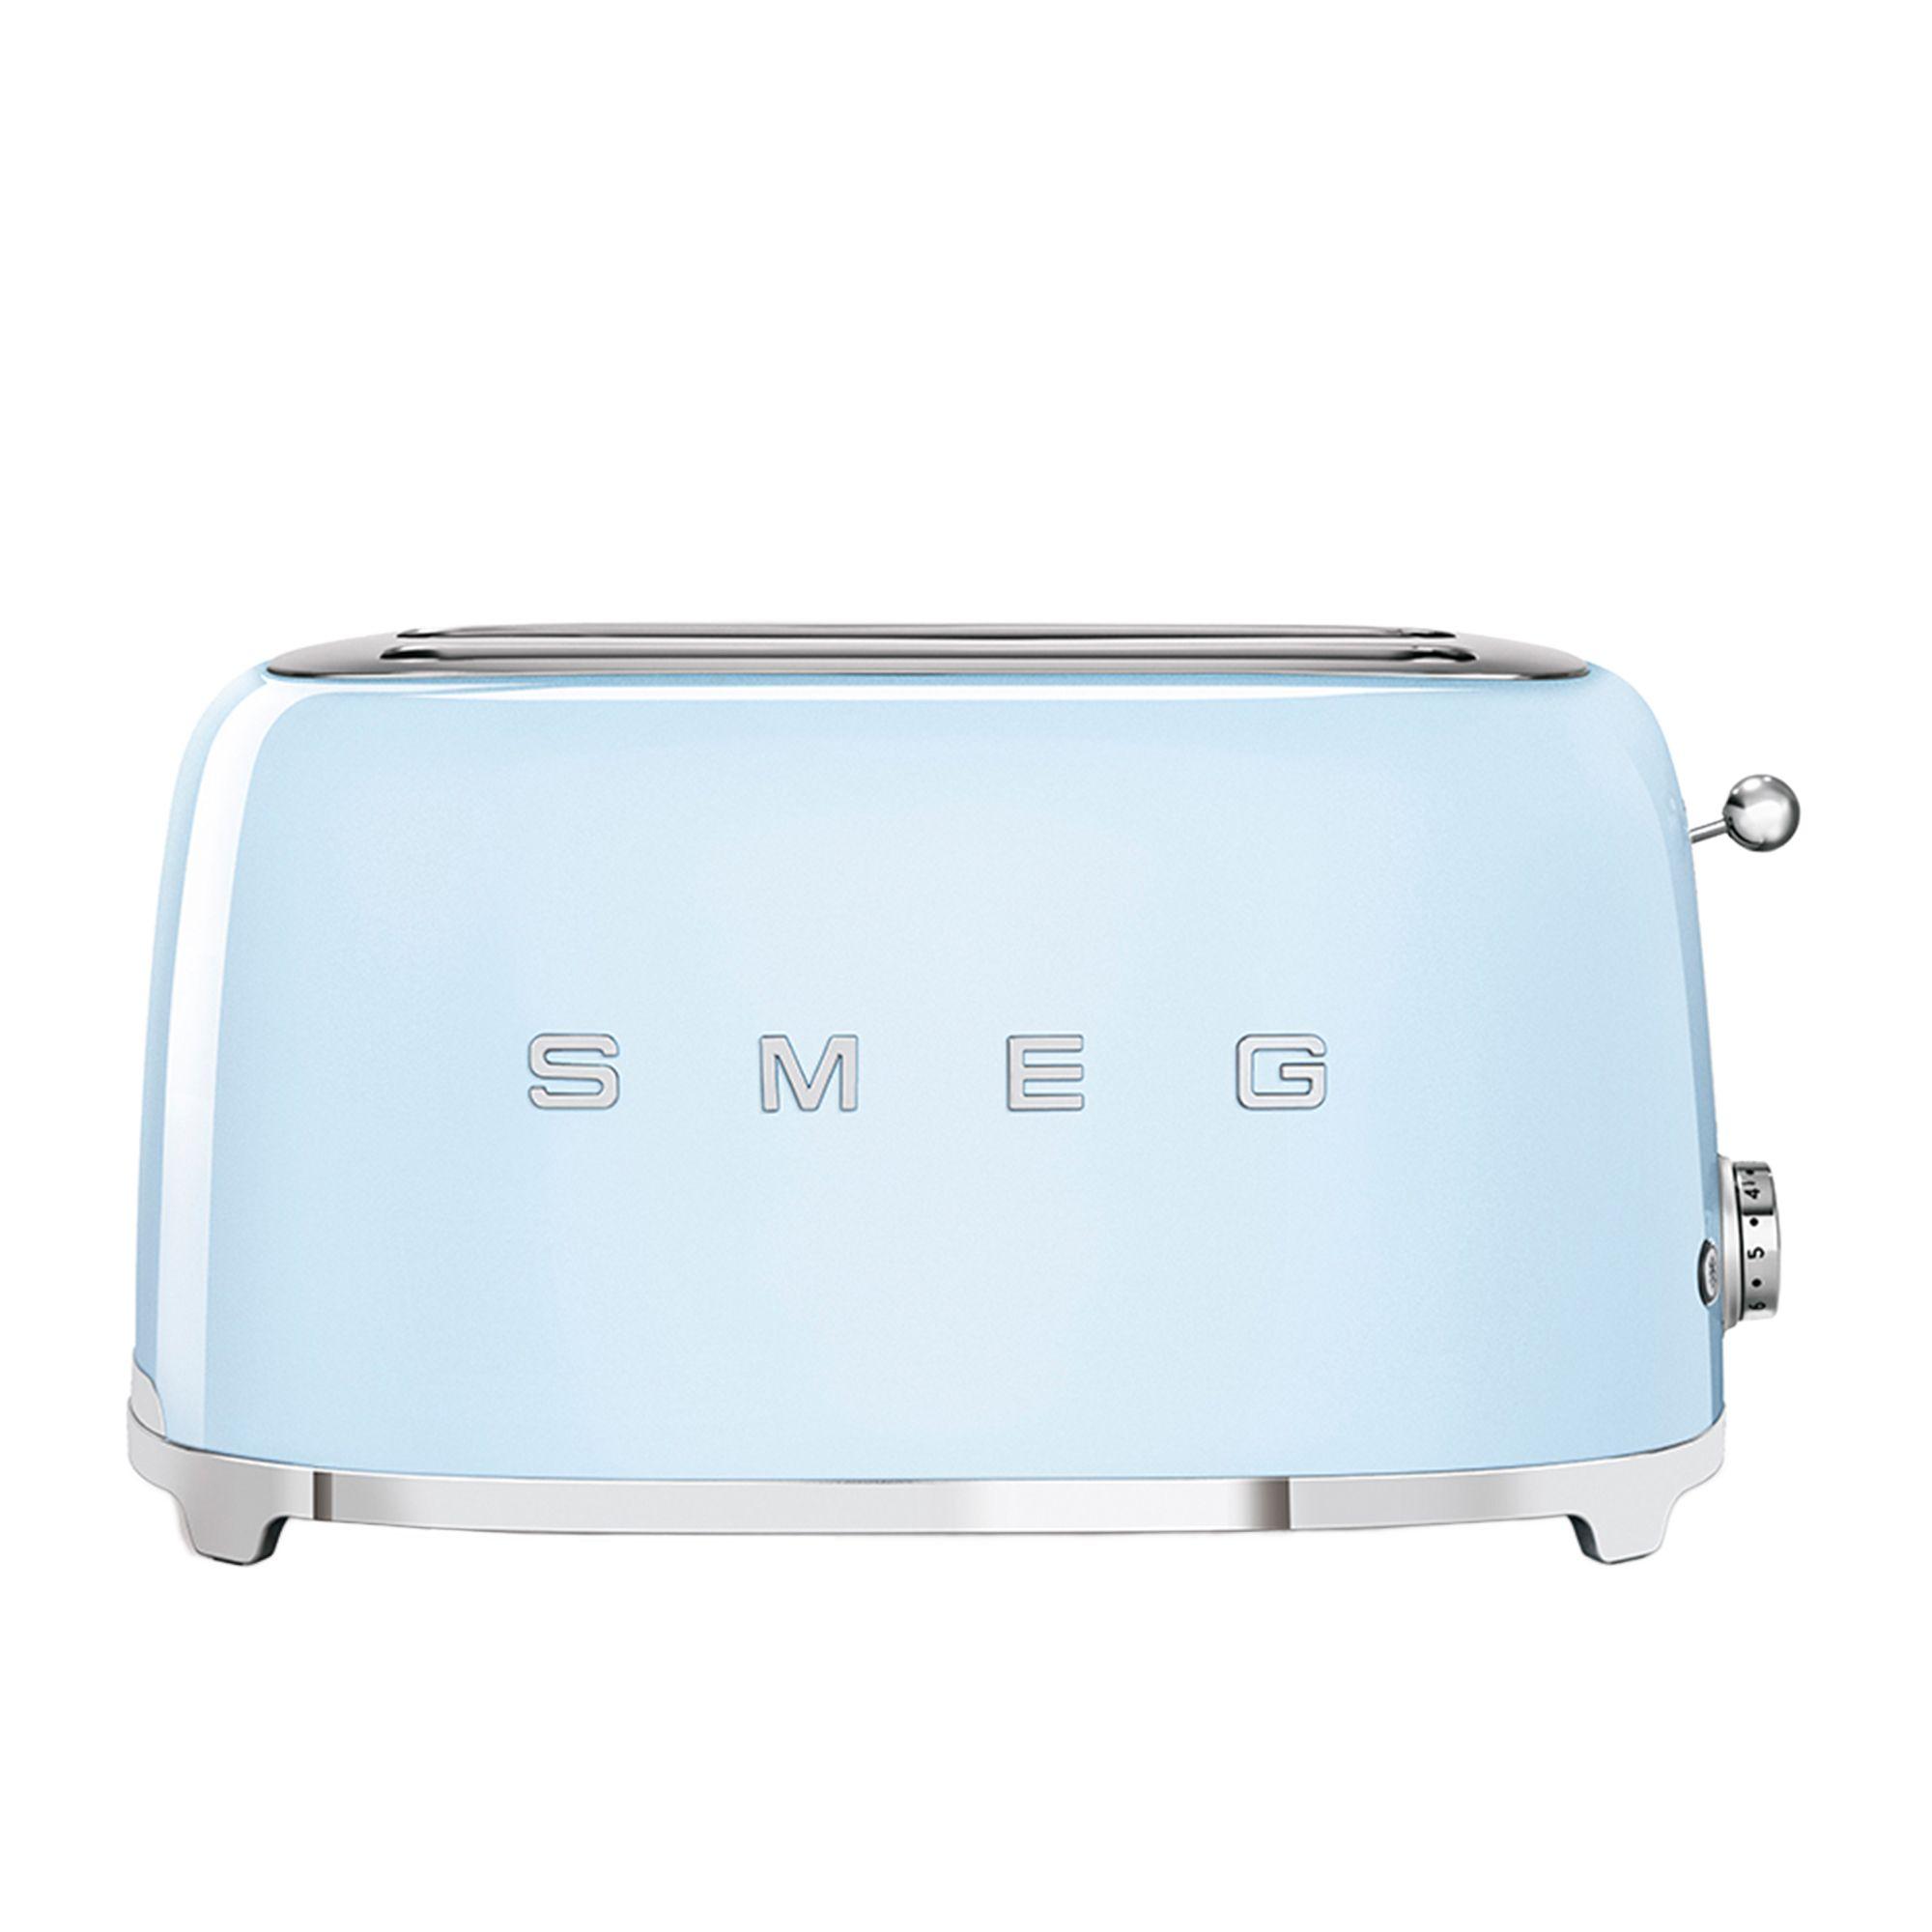 Smeg 50's Retro Style 4 Slice Toaster Pastel Blue Image 3